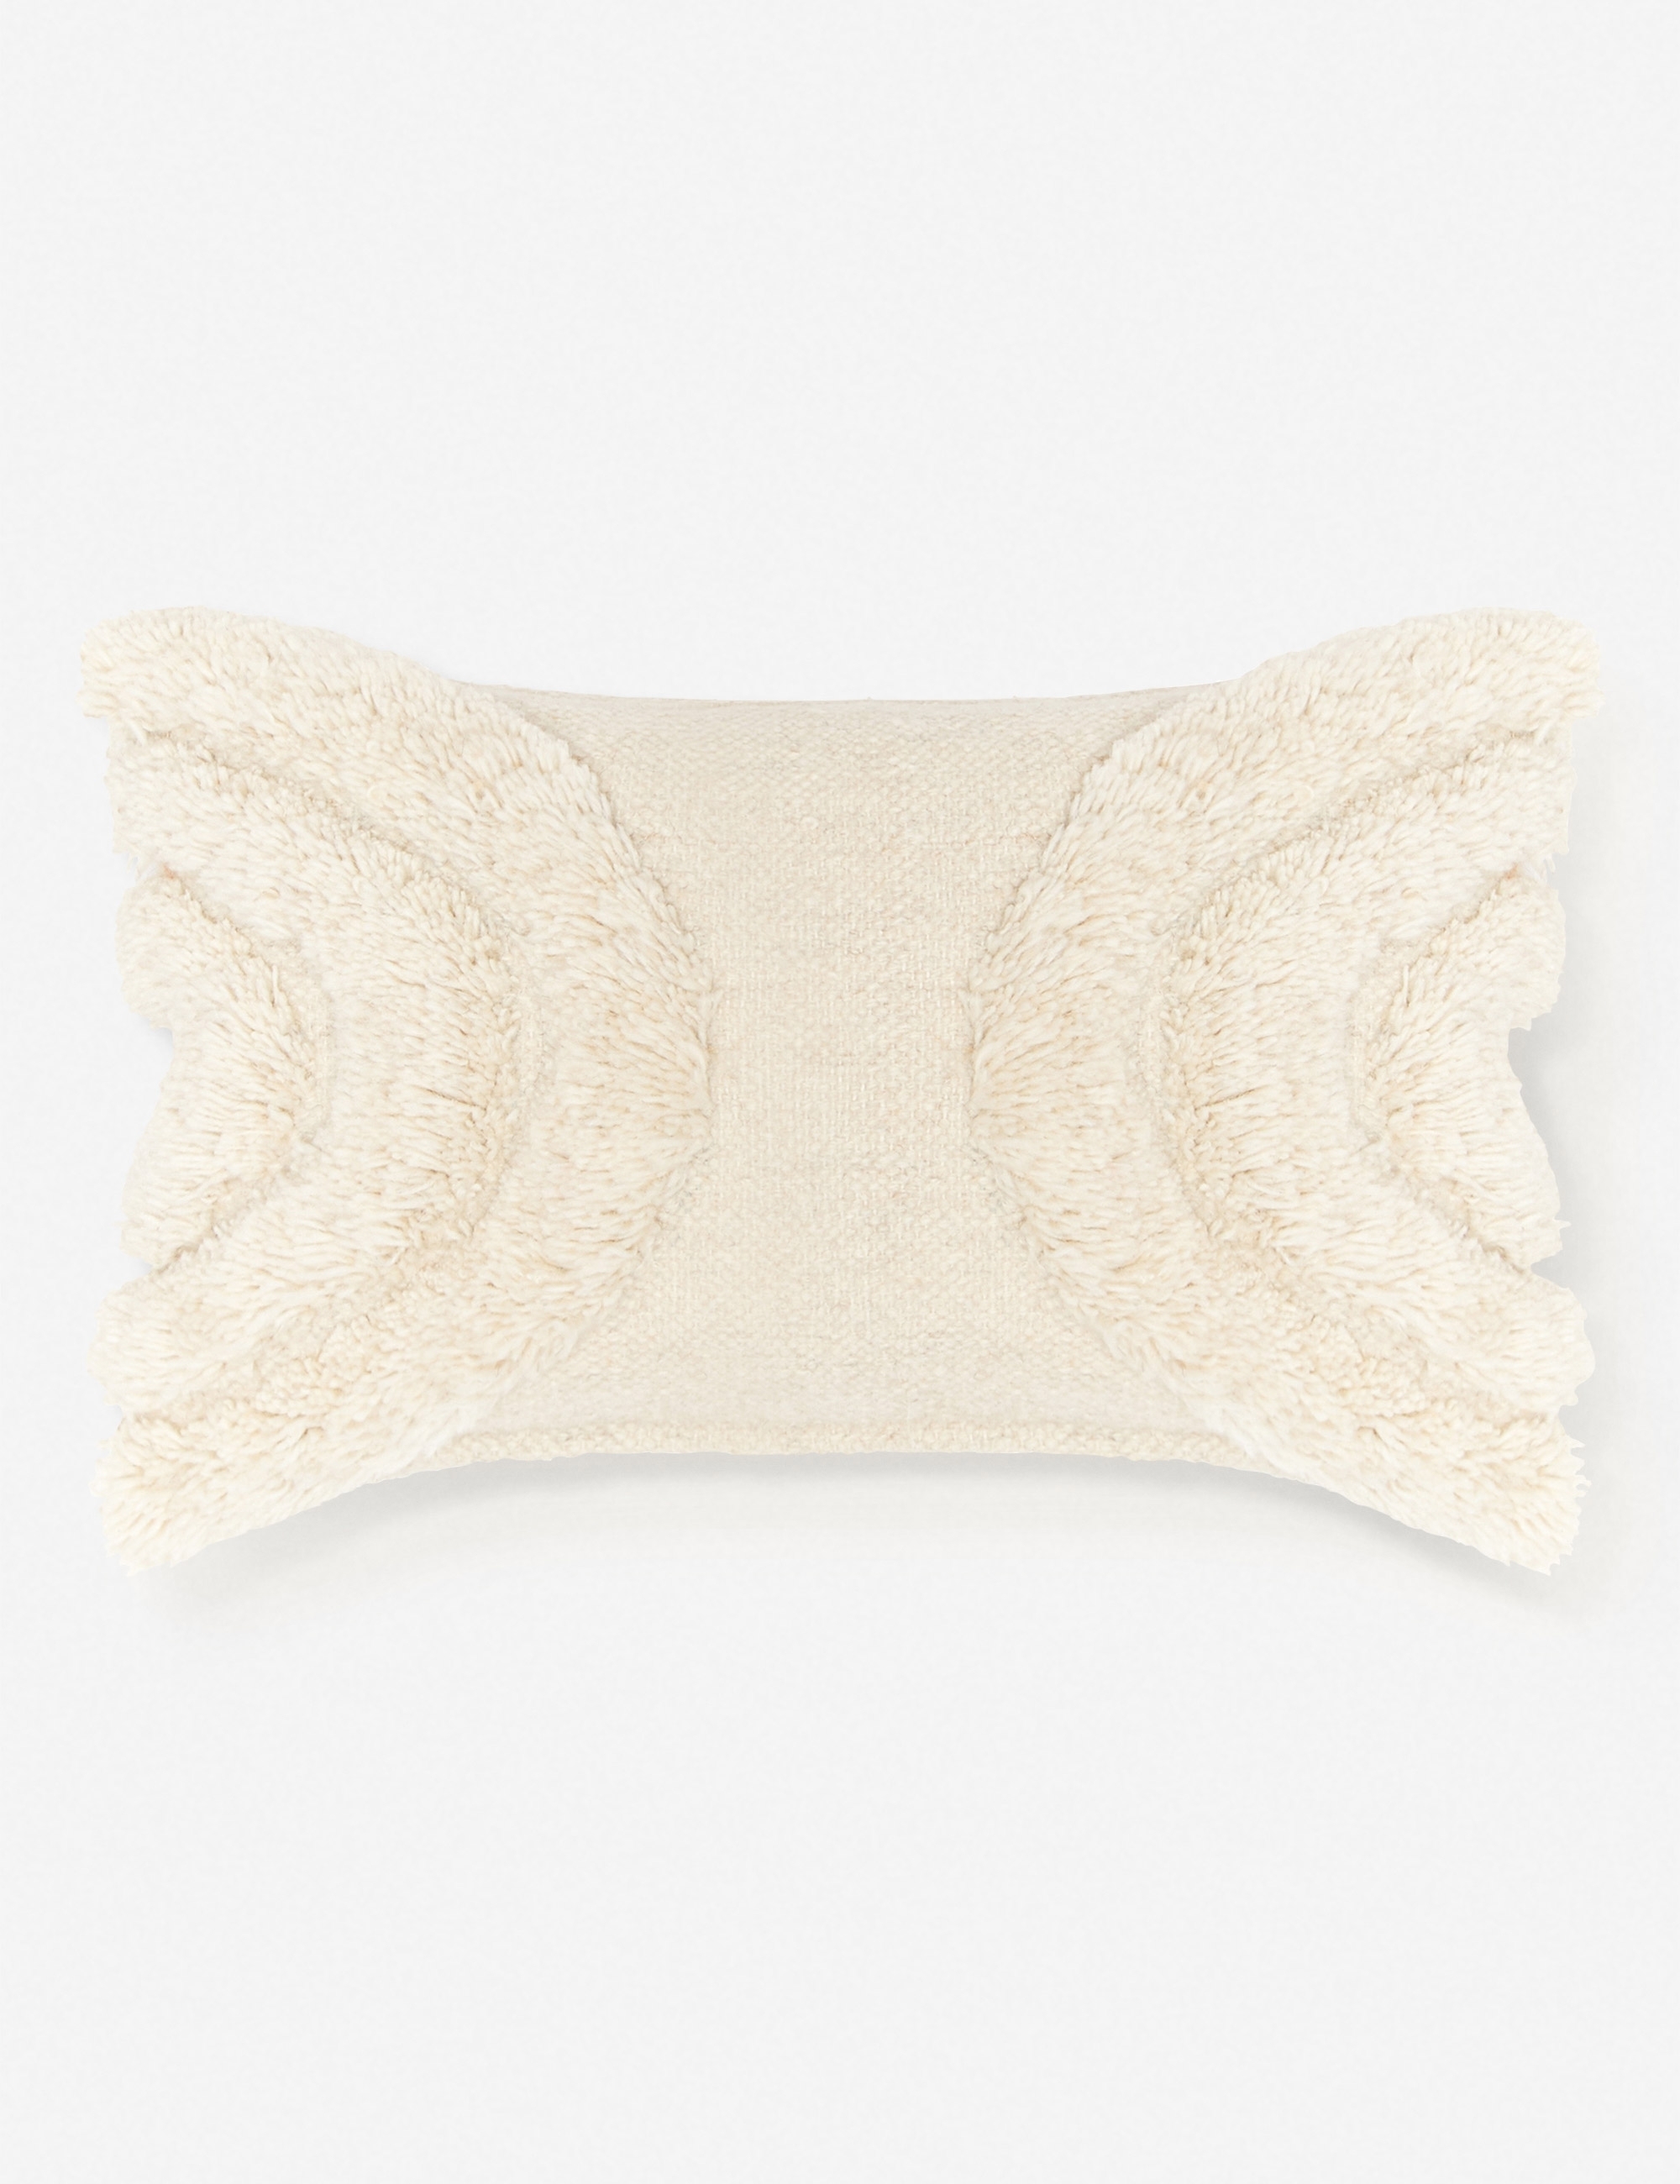 Arches Lumbar Pillow, Natural By Sarah Sherman Samuel - Image 0